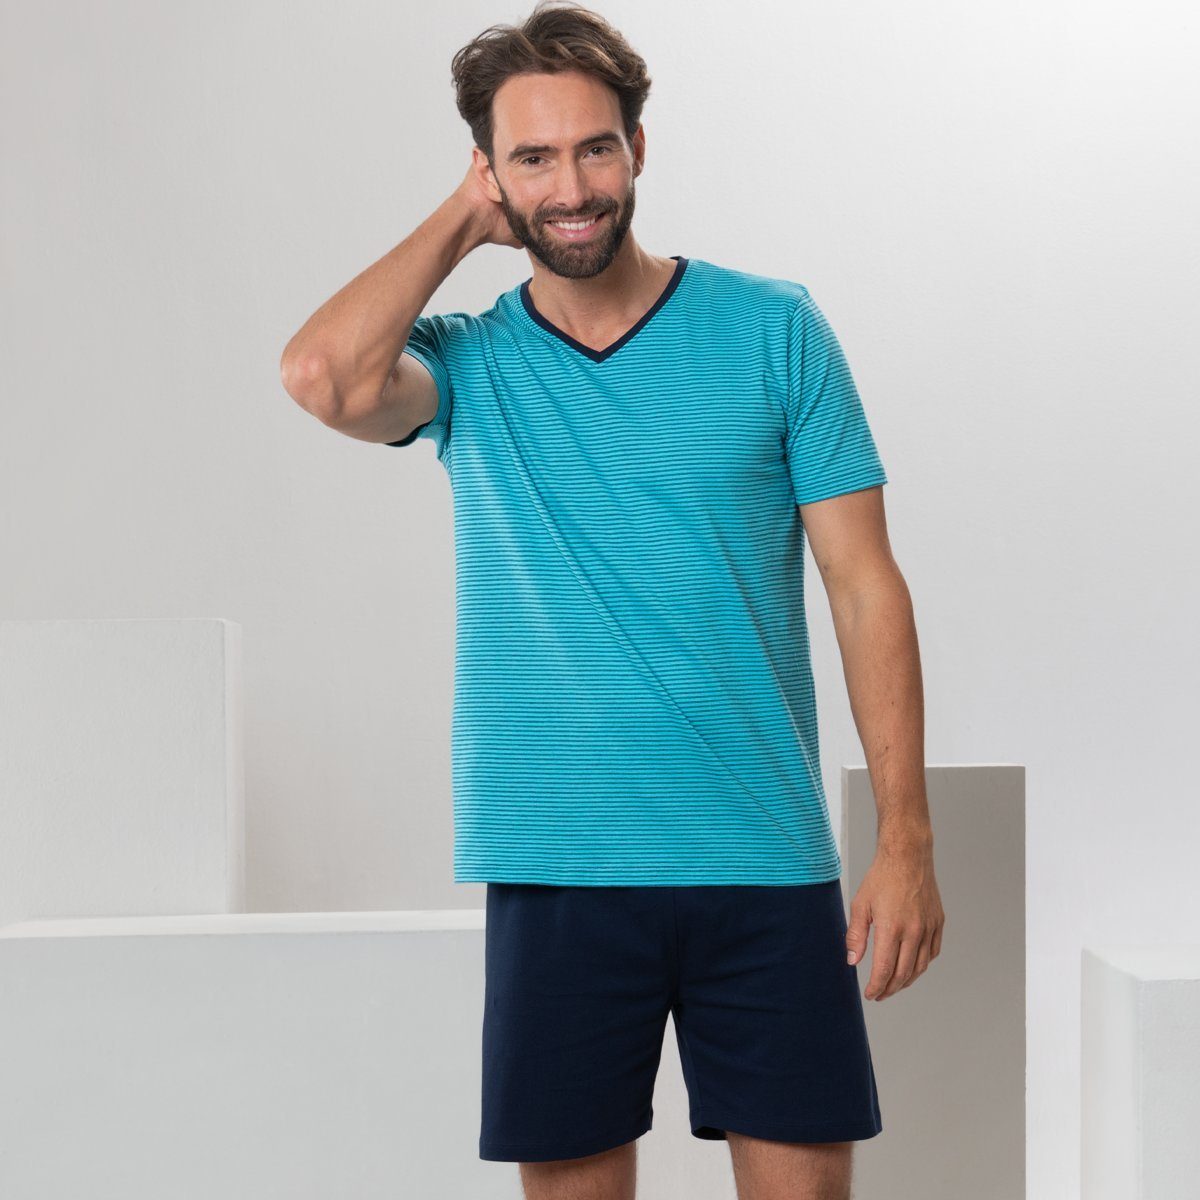 LIVING CRAFTS Schlafanzug CARL Sommerliche Leichtigkeit in abgestimmten Farbtönen Turquoise